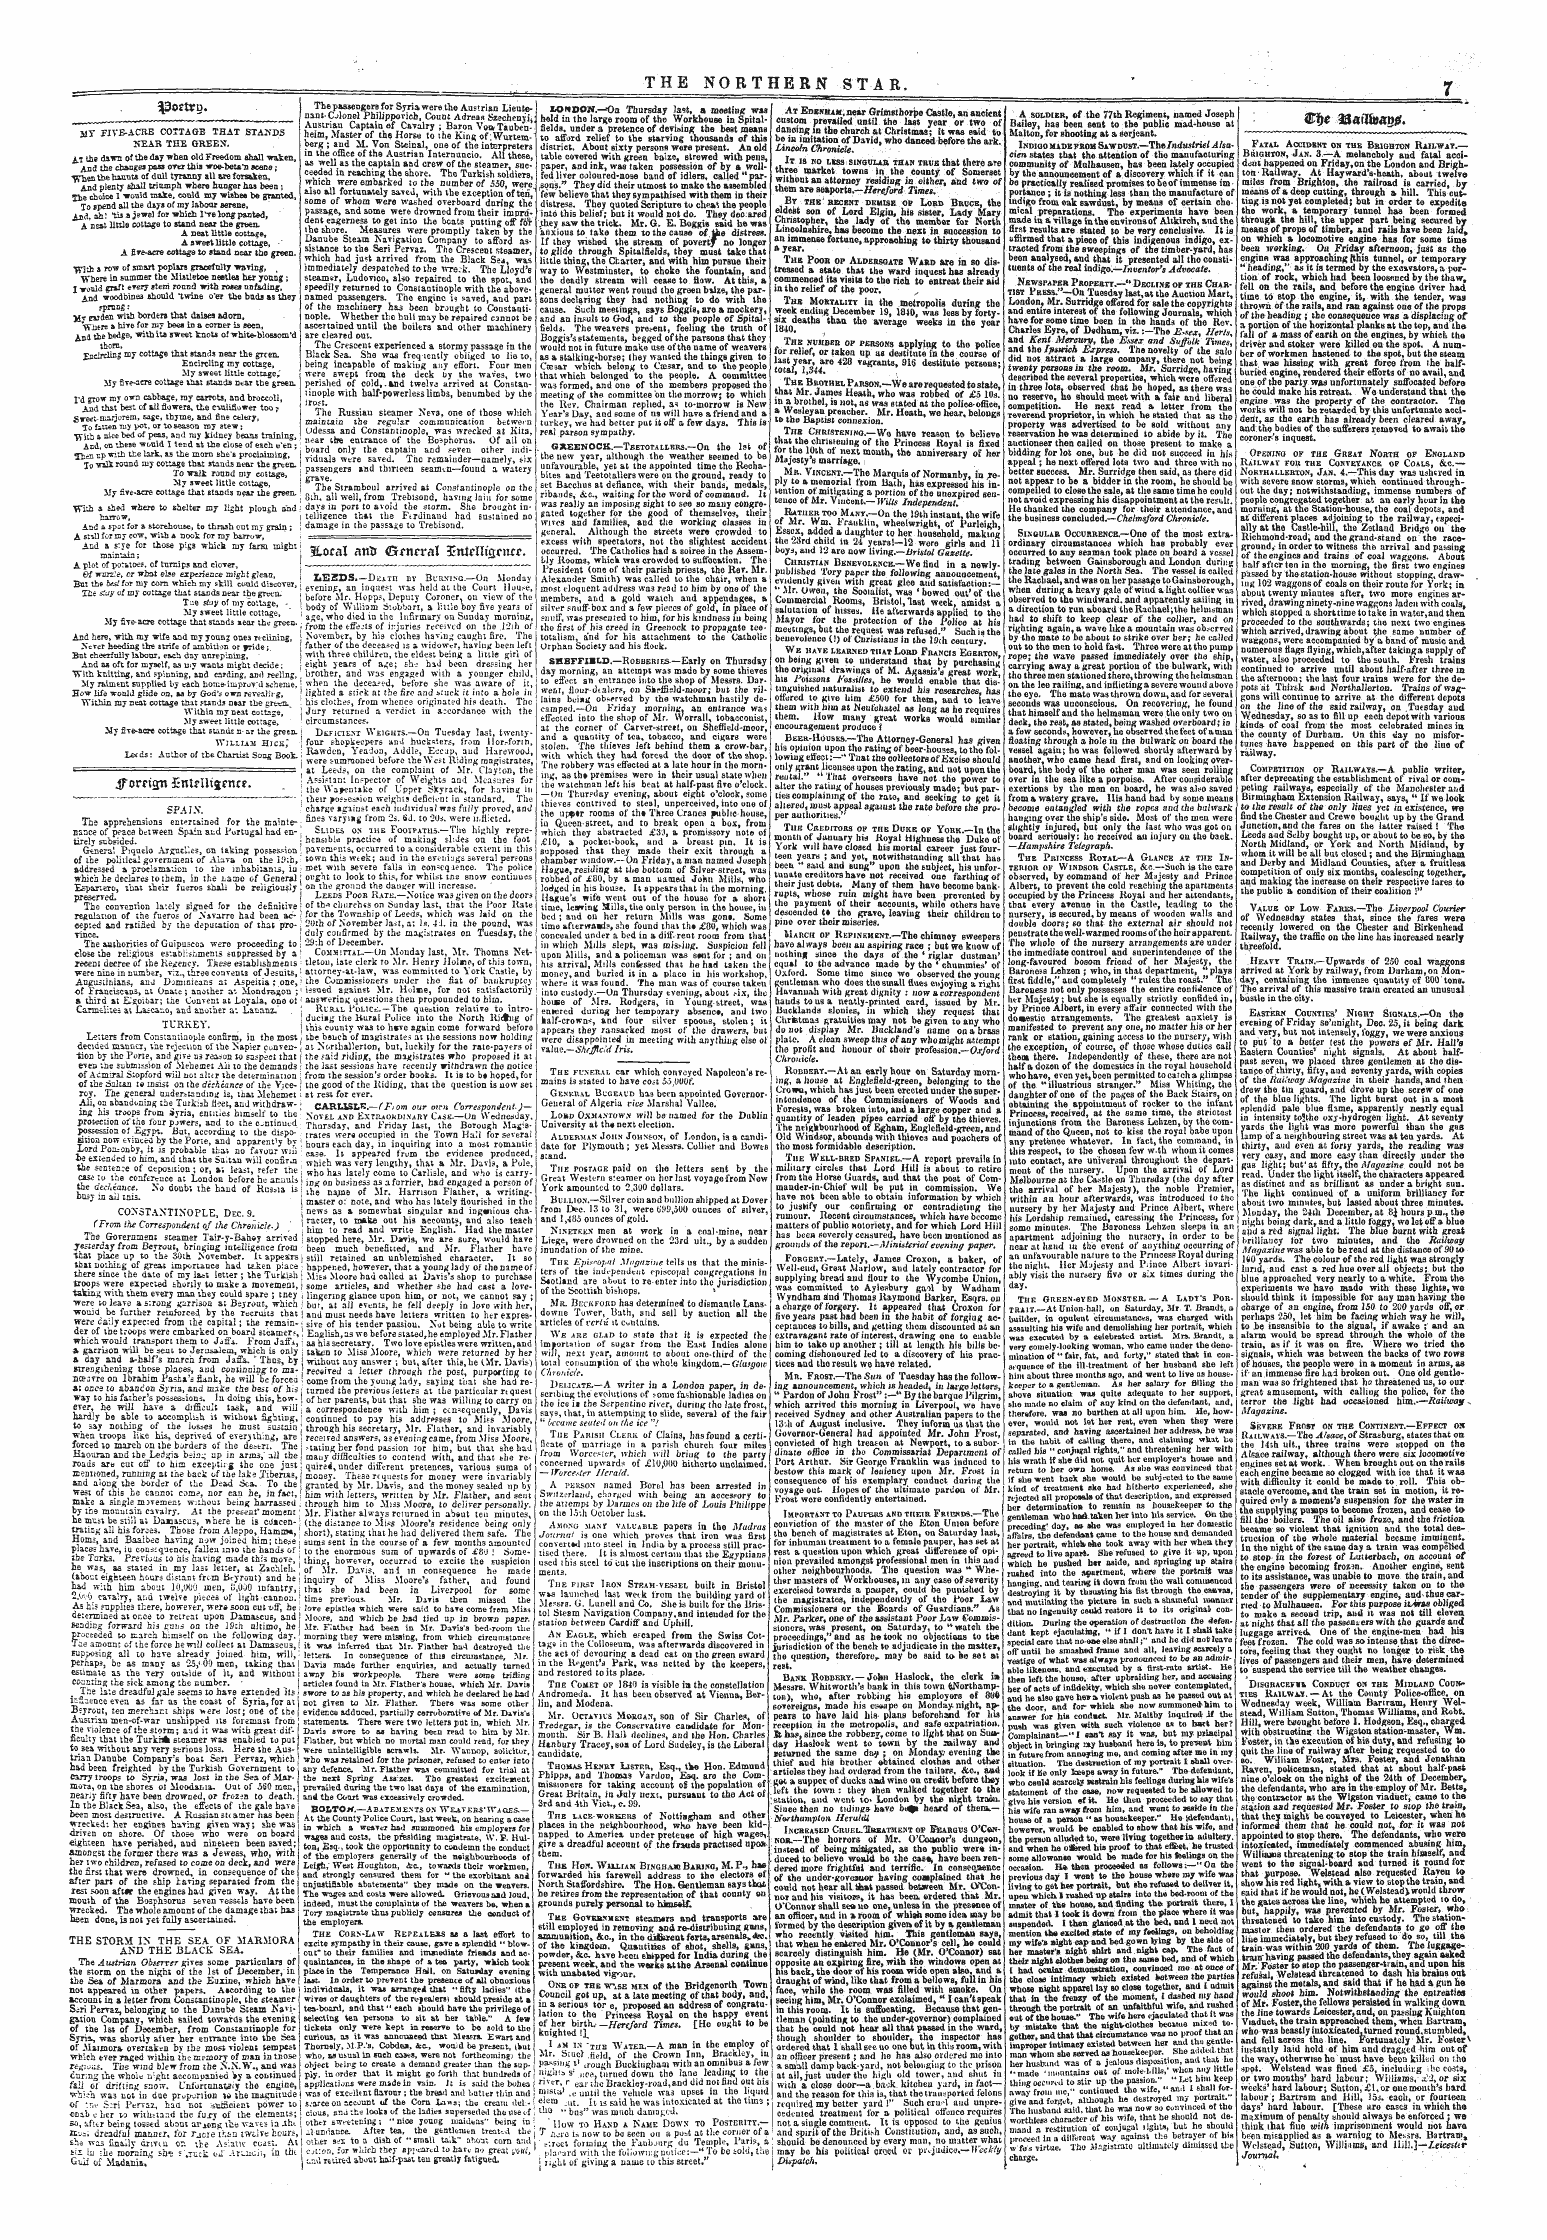 Northern Star (1837-1852): jS F Y, 2nd edition - 3lorai Ana ©R^Ntral Enfrlluwnr*